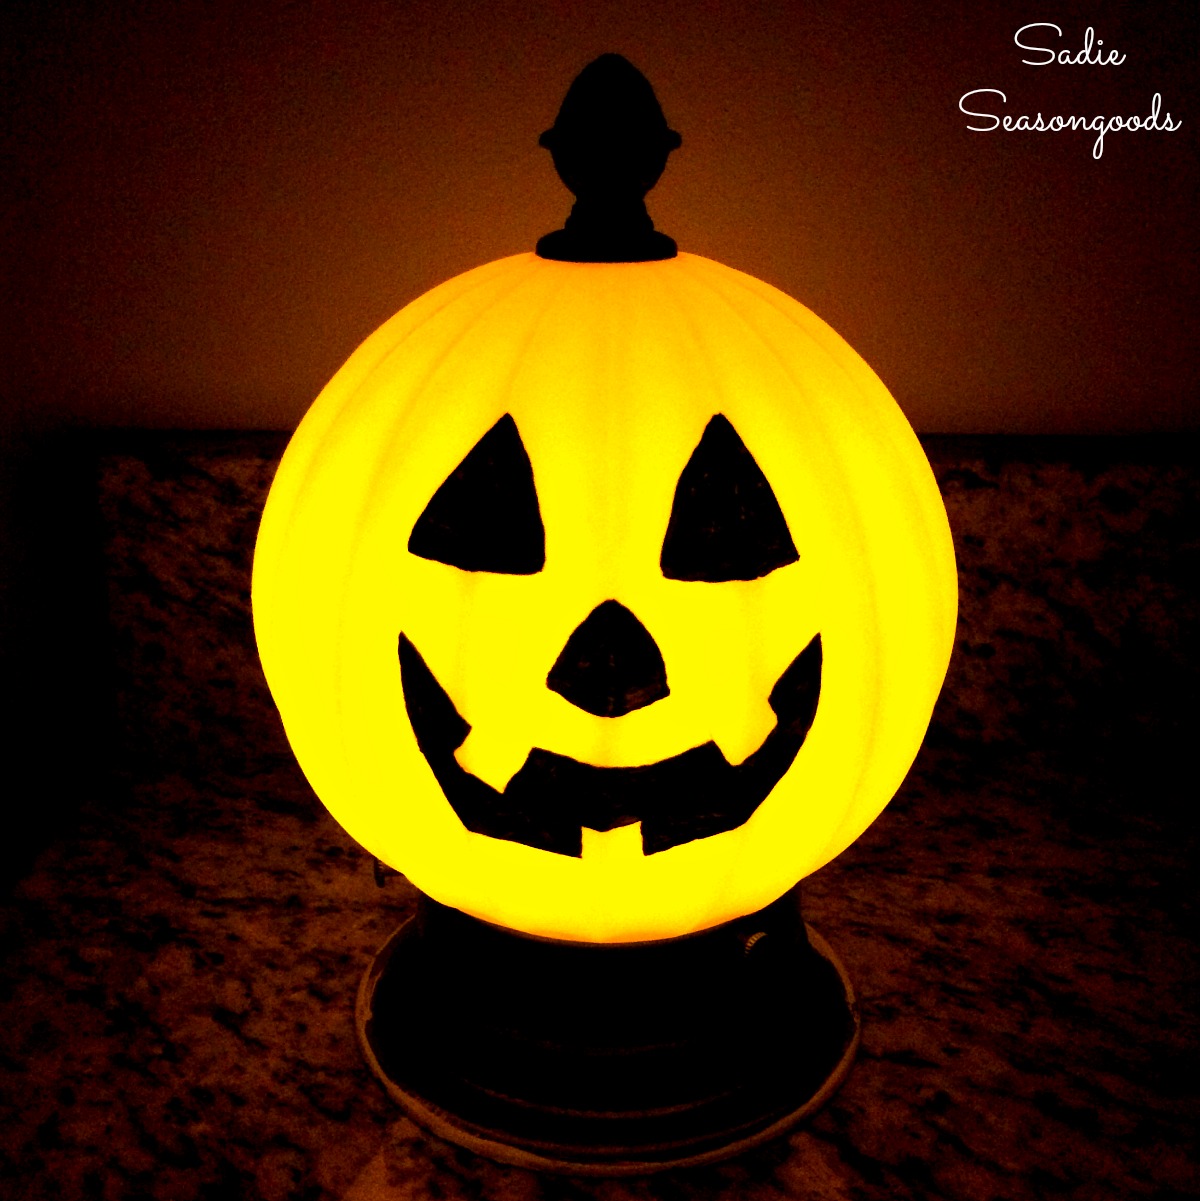 Light Up Pumpkin and Halloween Jack-o-Lantern from an Old Light Fixture